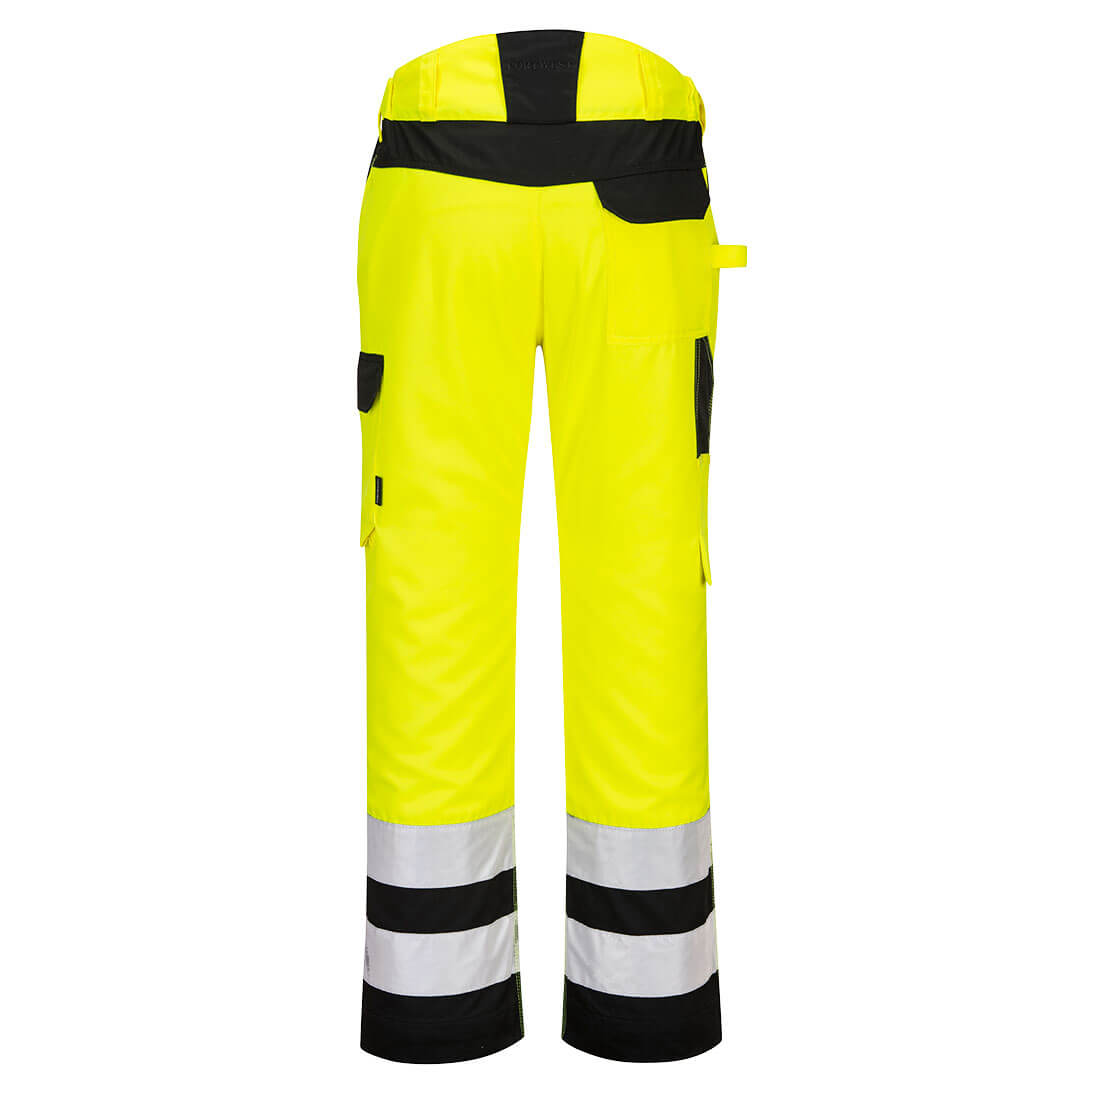 PW241 - Spodnie serwisowe ostrzegawcze PW2 - 2 kolory - 28-48